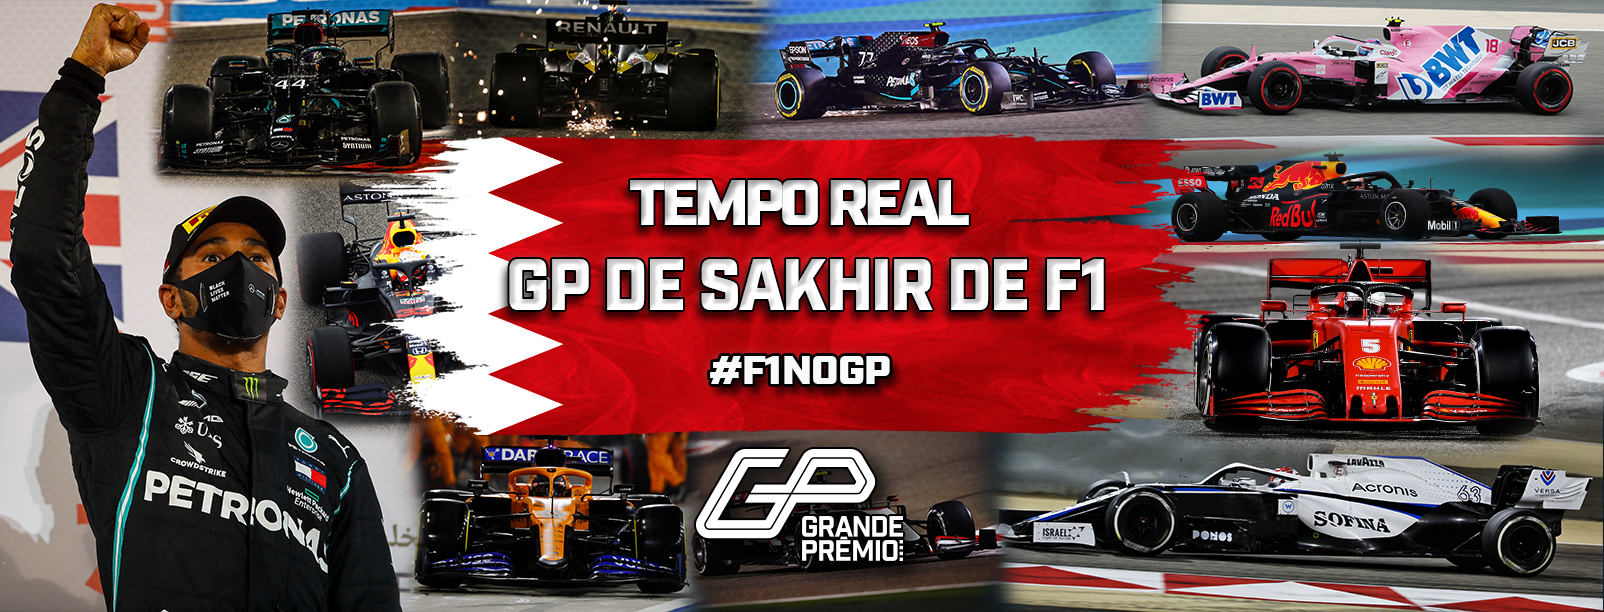 GP de Sakhir 2020 - Classificação ao vivo - Grande Prêmio